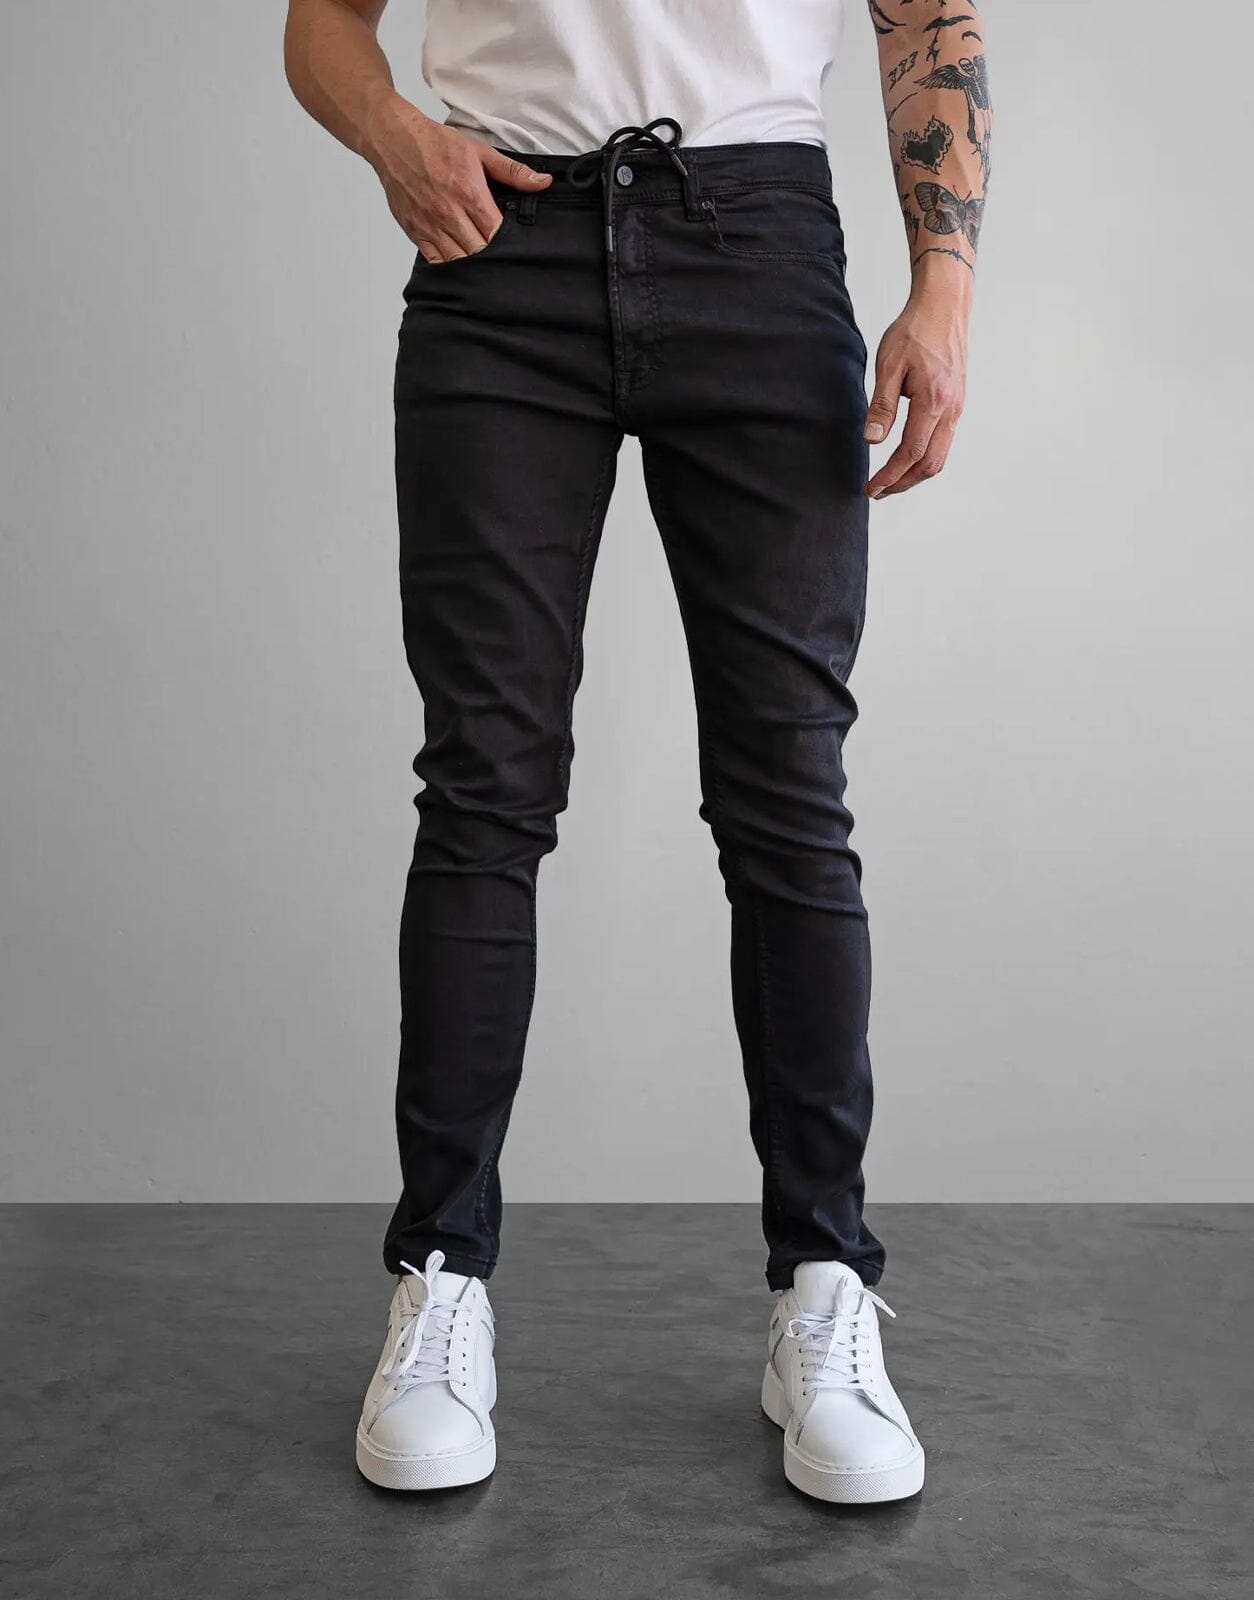 Fade Iconic Graphite Black Jeans - Subwear